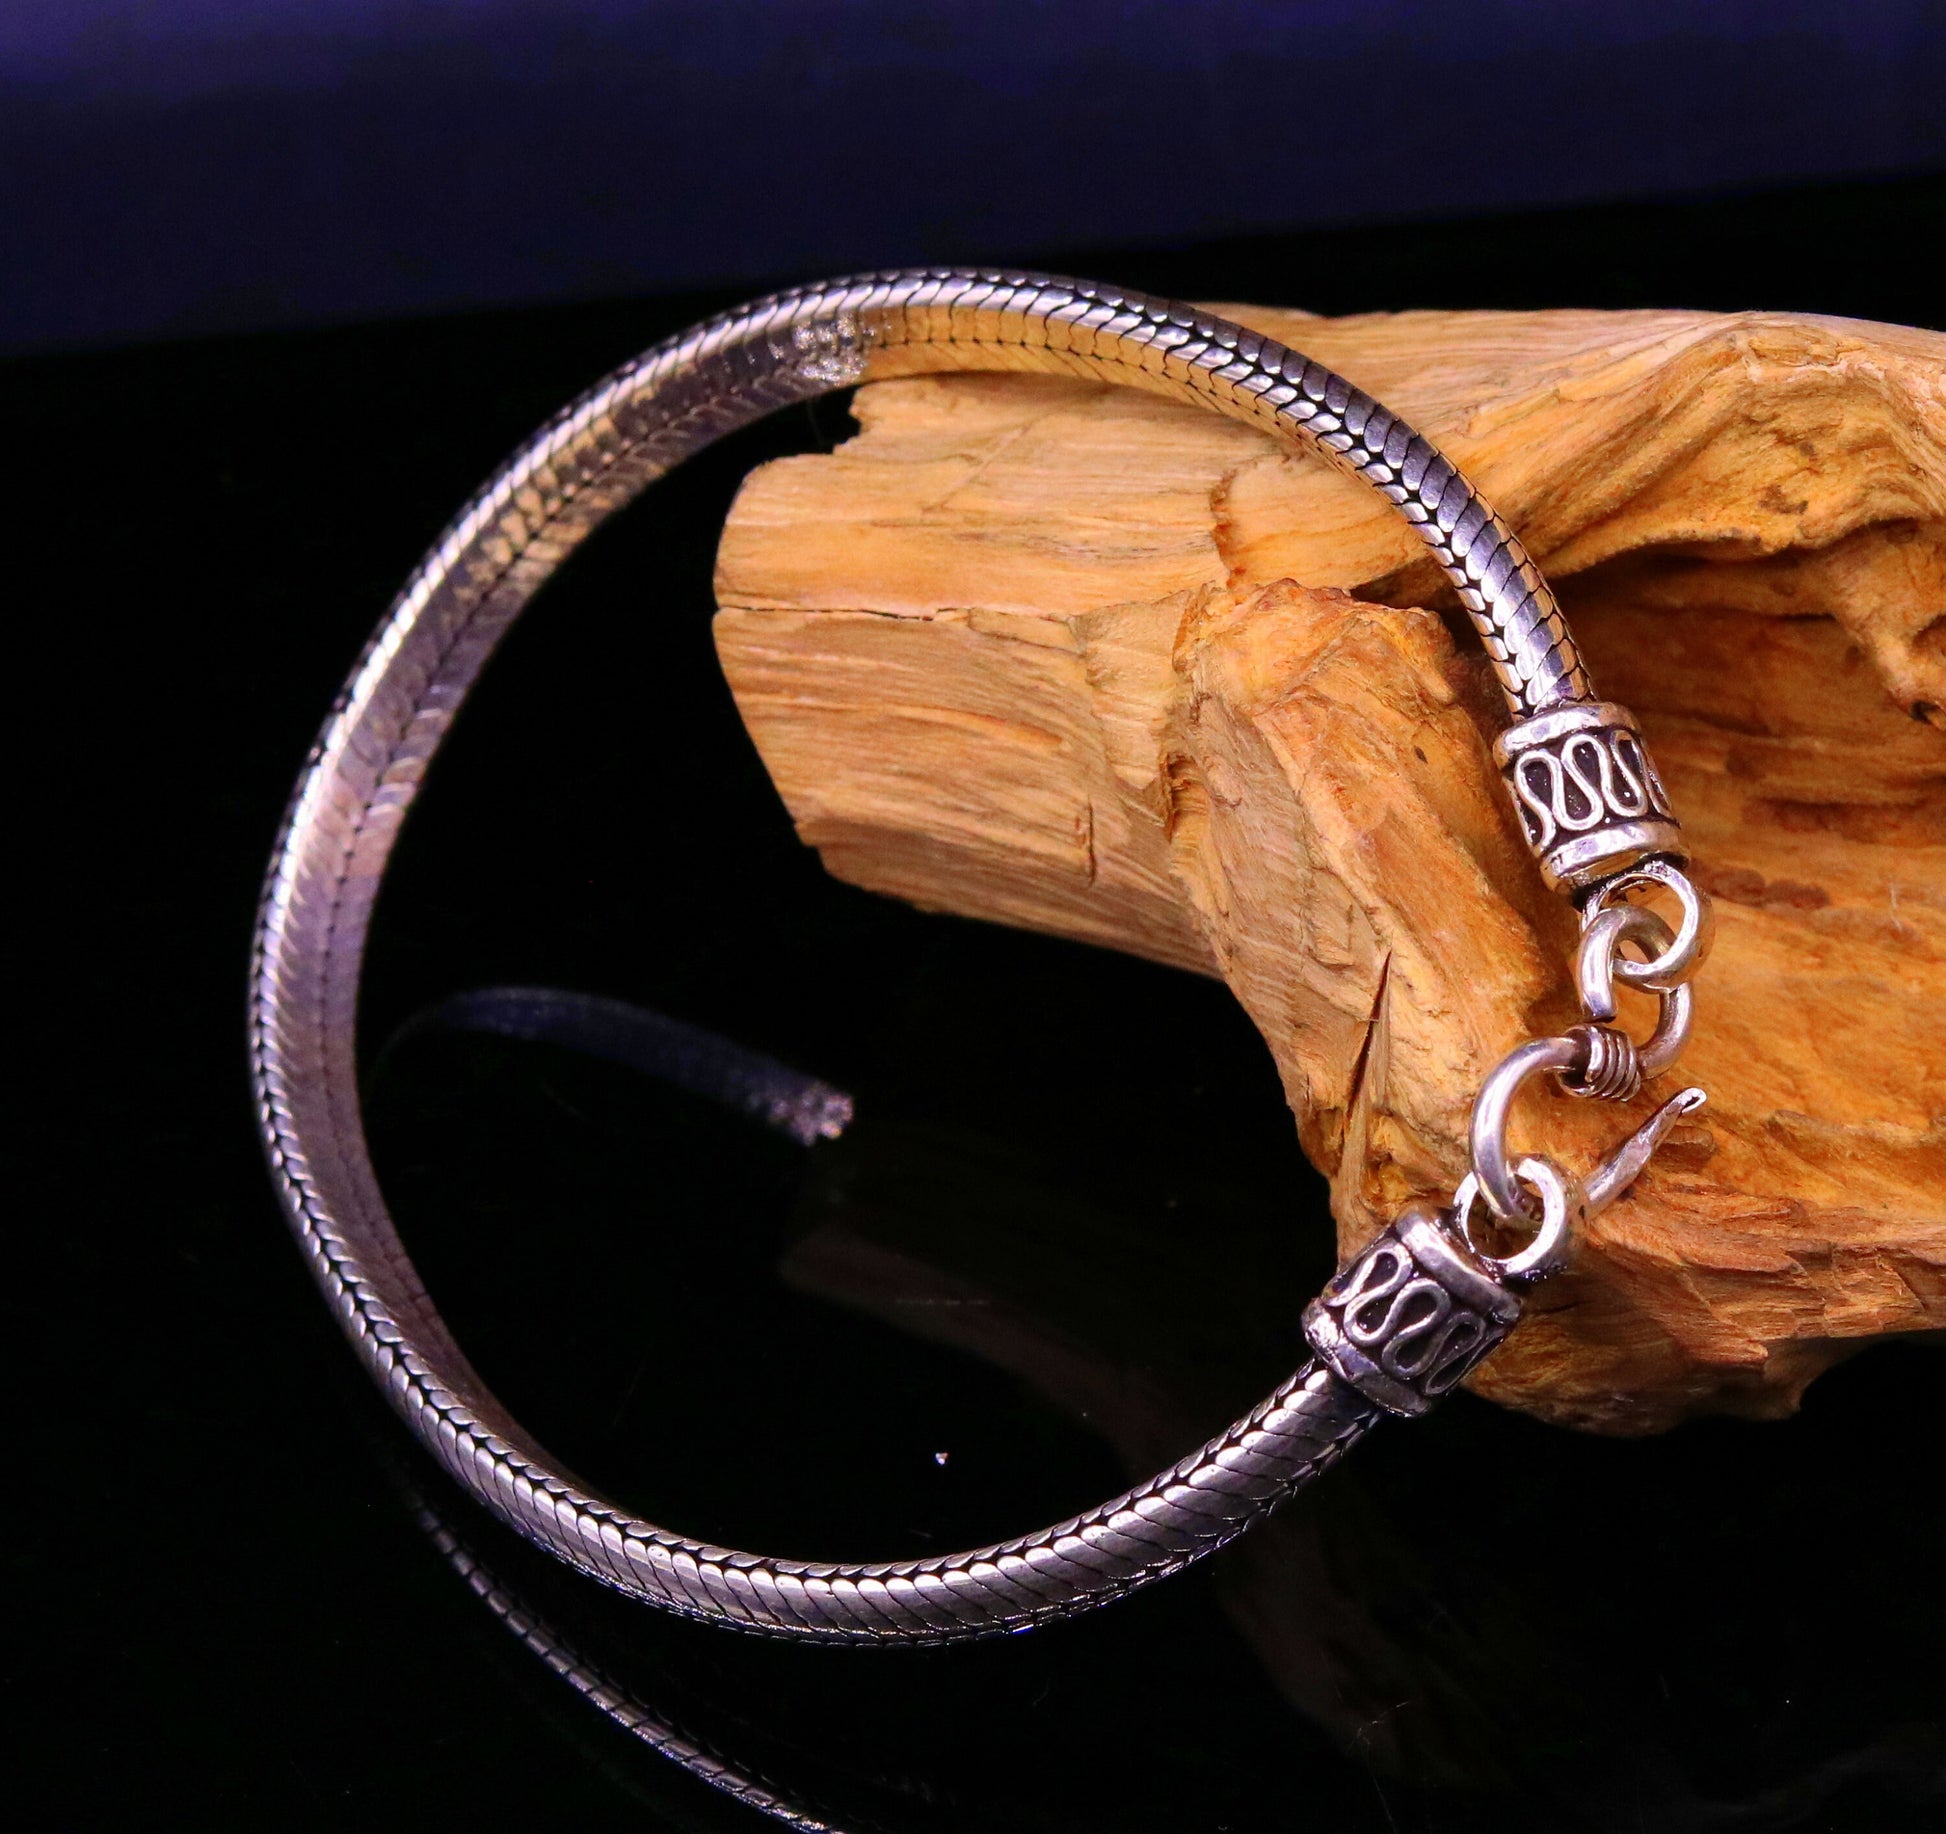 8.7 inches 6 mm 925 sterling silver handmade snake chain bracelet D shape chain bracelet half round snake chain bracelet fro unisex sbr150 - TRIBAL ORNAMENTS